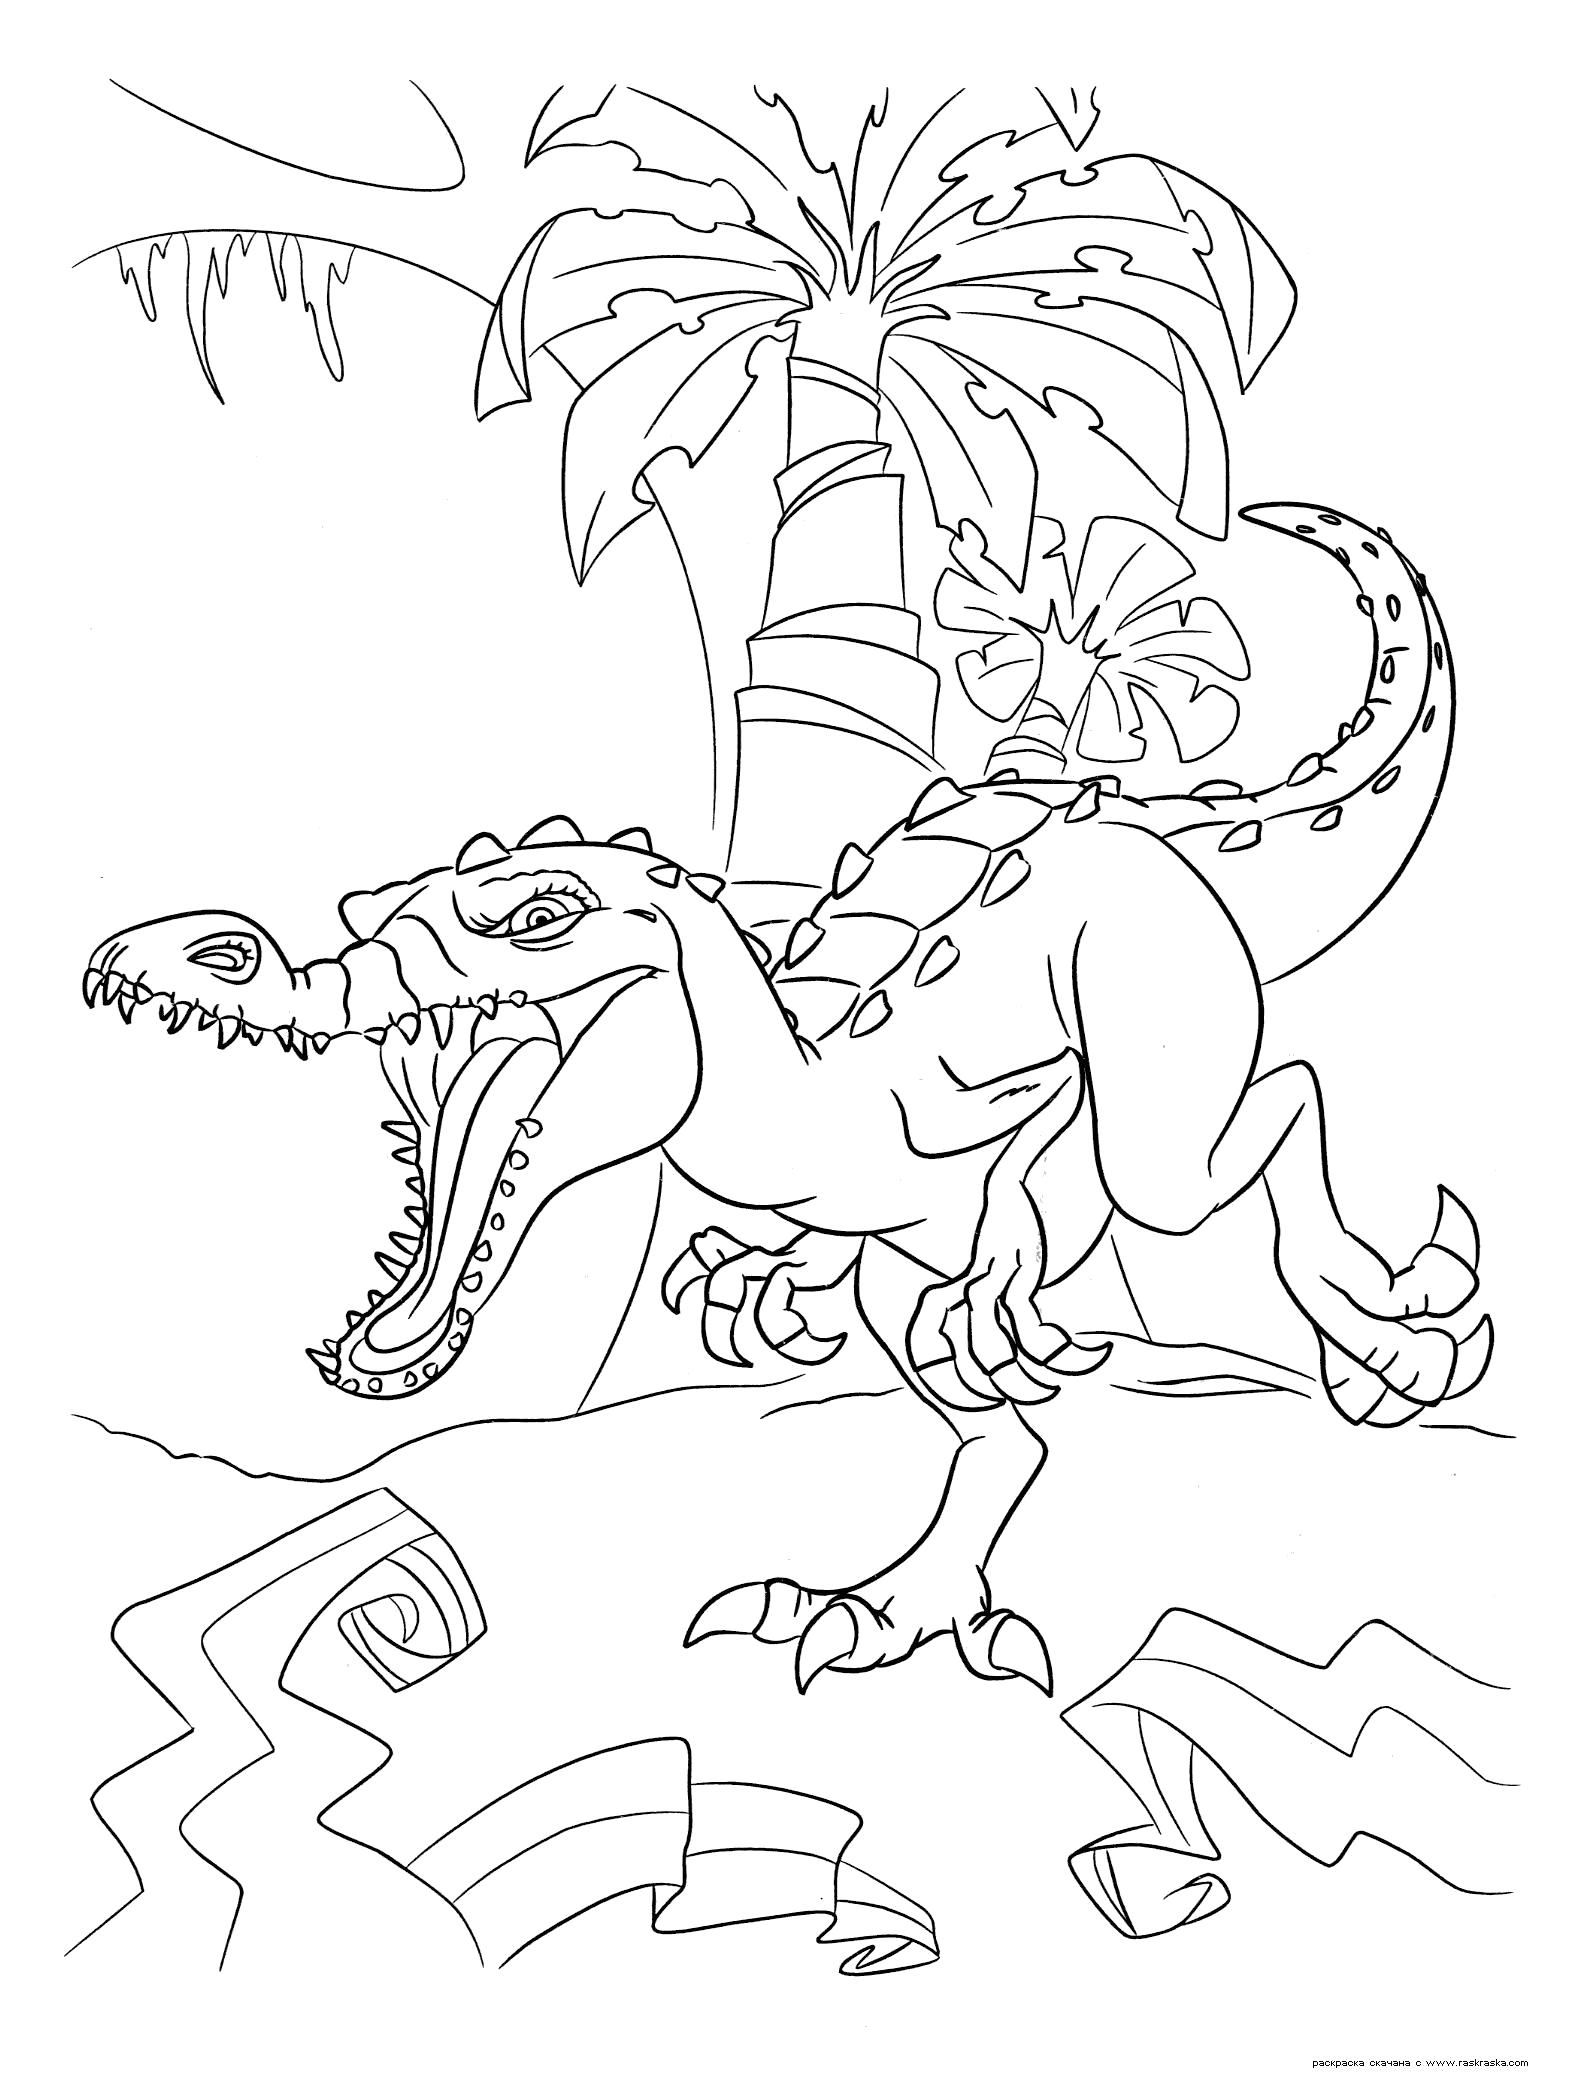 Раскраска  Руди.  Гигантский динозавр Руди, белый барионикс, гроза и ужас джунглей . Скачать динозавр.  Распечатать динозавр